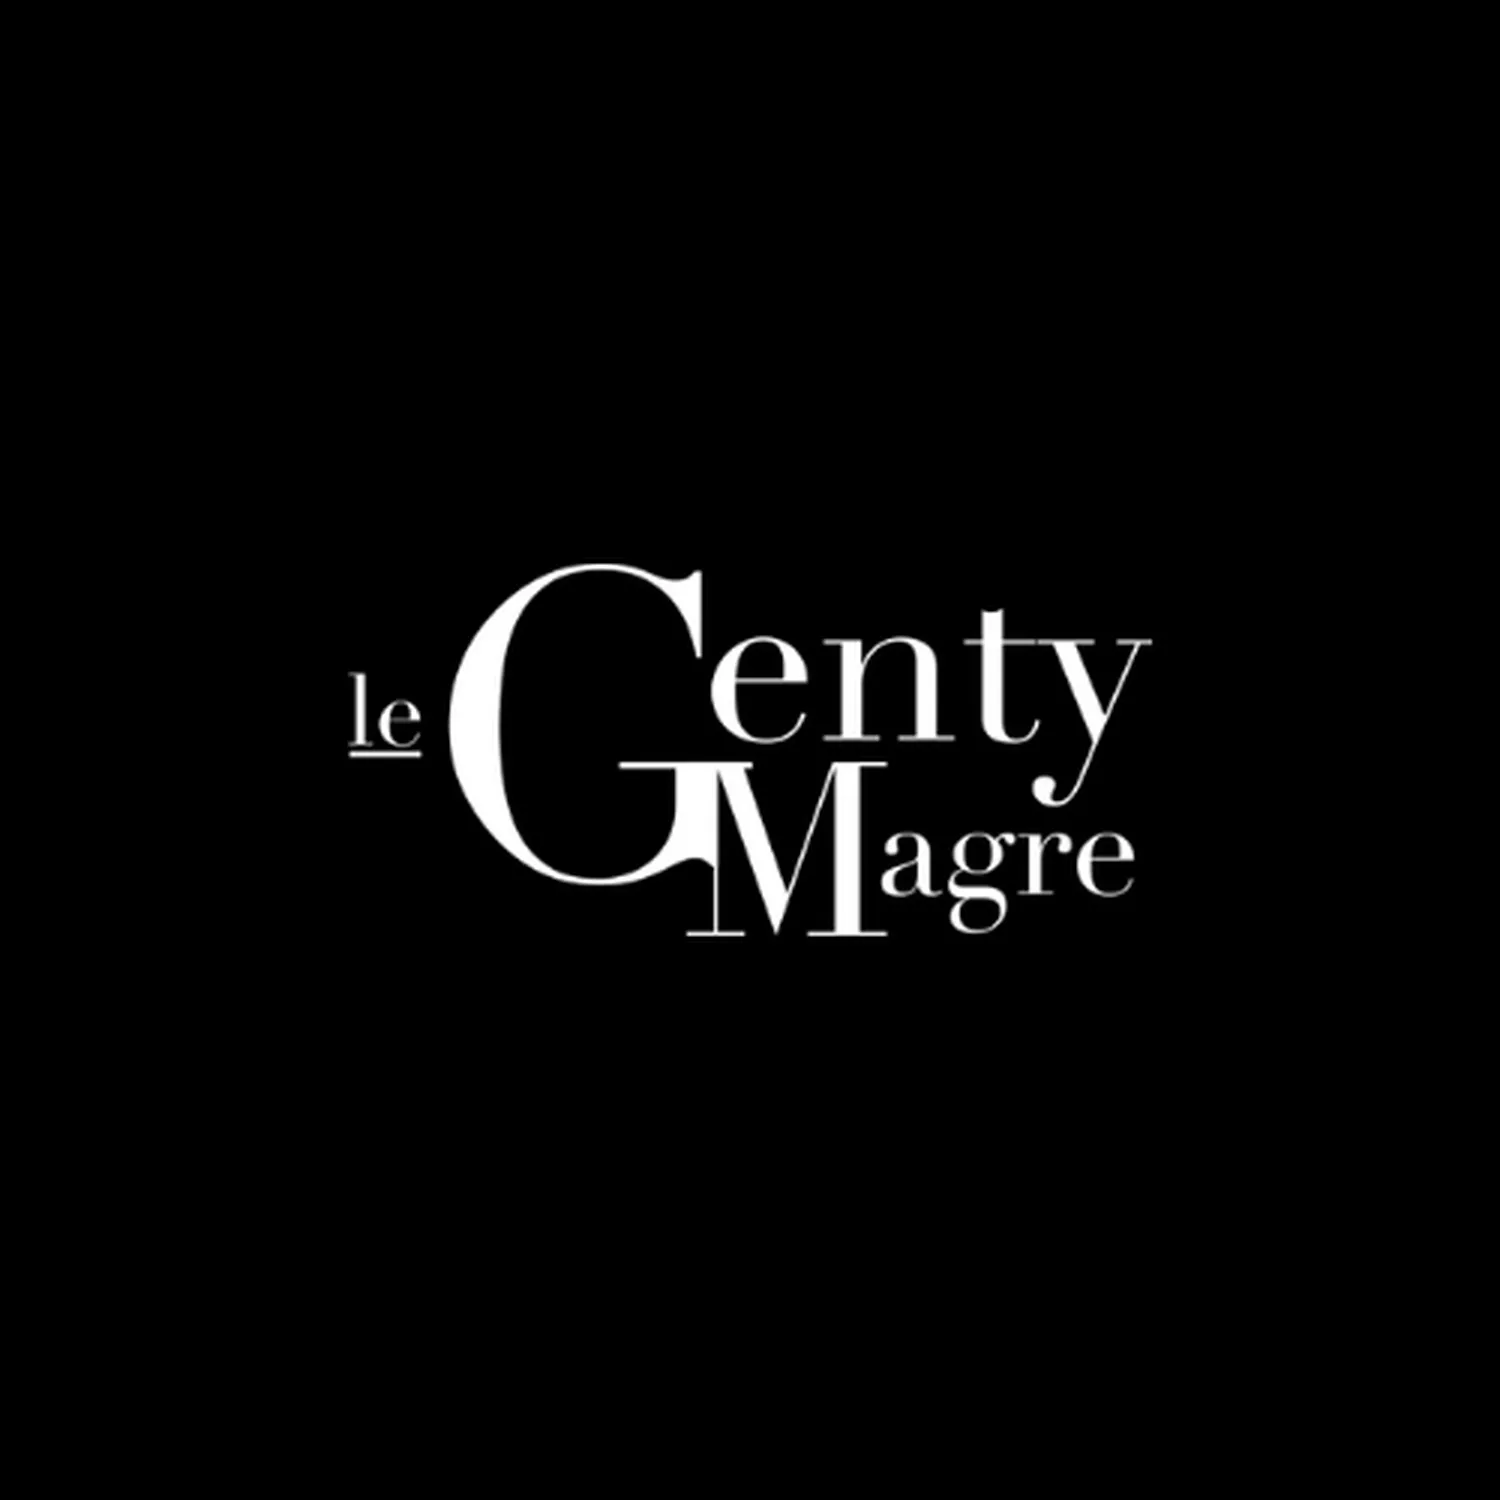 Reservation at LE GENTY MAGRE restaurant - Toulouse | KEYS